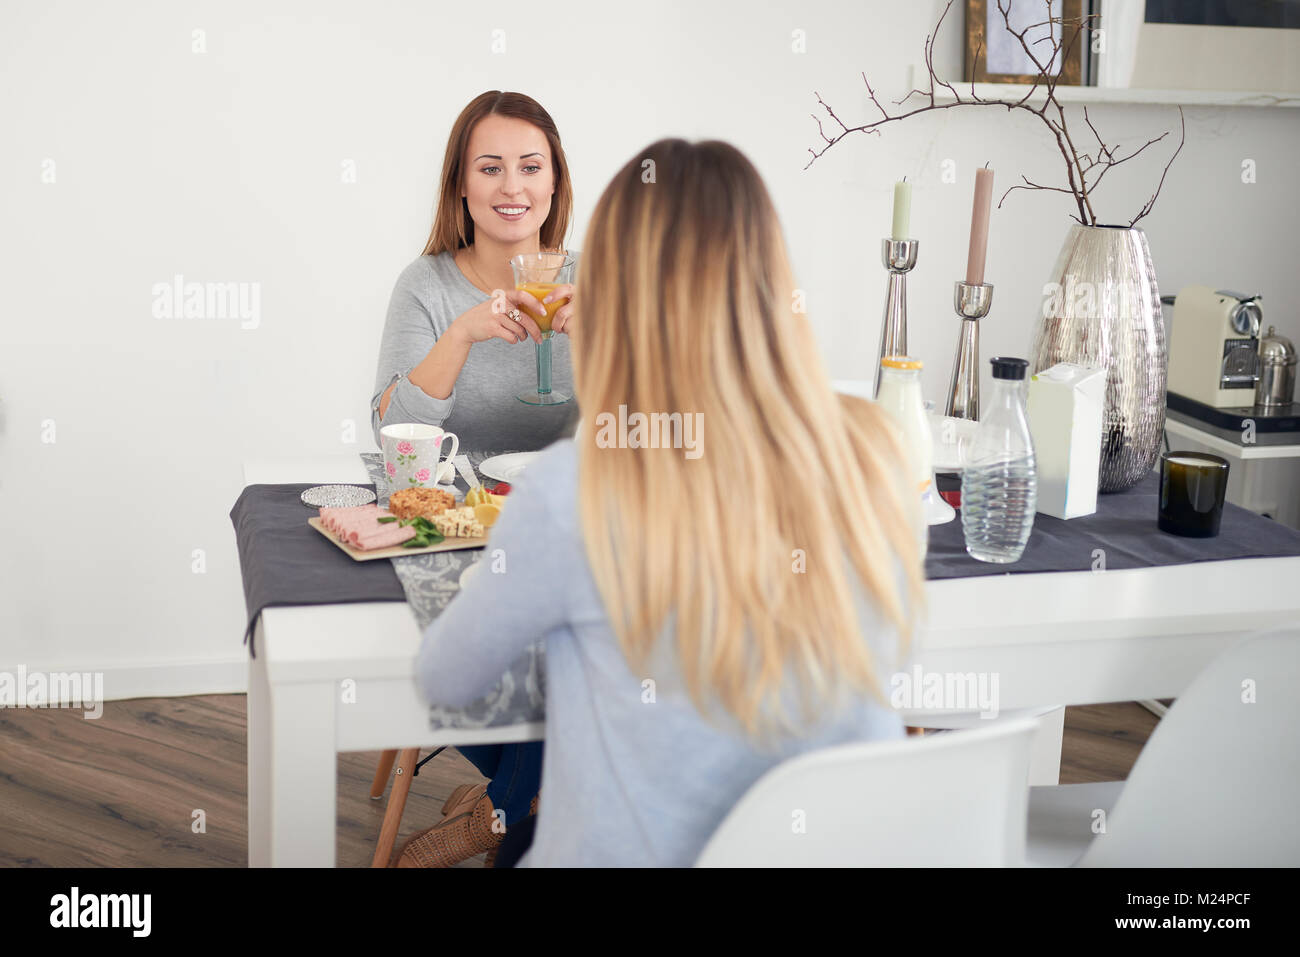 Smiling woman le petit-déjeuner avec sa fille ou ami assis à la table avec une bonne propagation de fruits, céréales, petits pains, charcuterie, fromage Banque D'Images